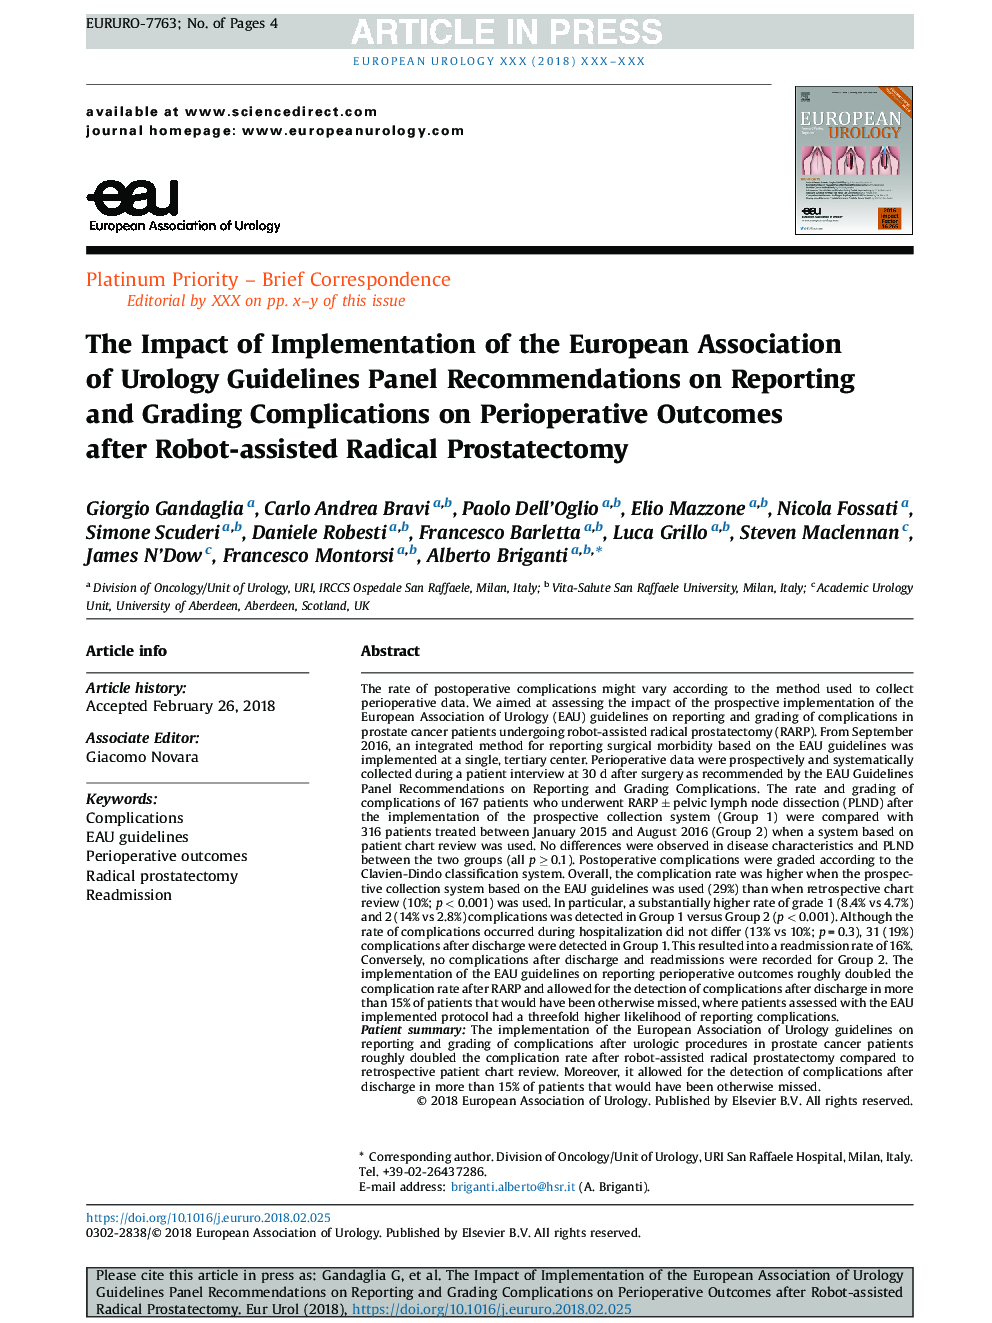 تأثیر پیاده سازی توصیه نامه پنل راهنمای انجمن ارولوژی اروپا در مورد عوارض گزارش و ارزیابی نتایج پس از عمل پس از پروستاتکتومی رادیکال با استفاده از ربات 